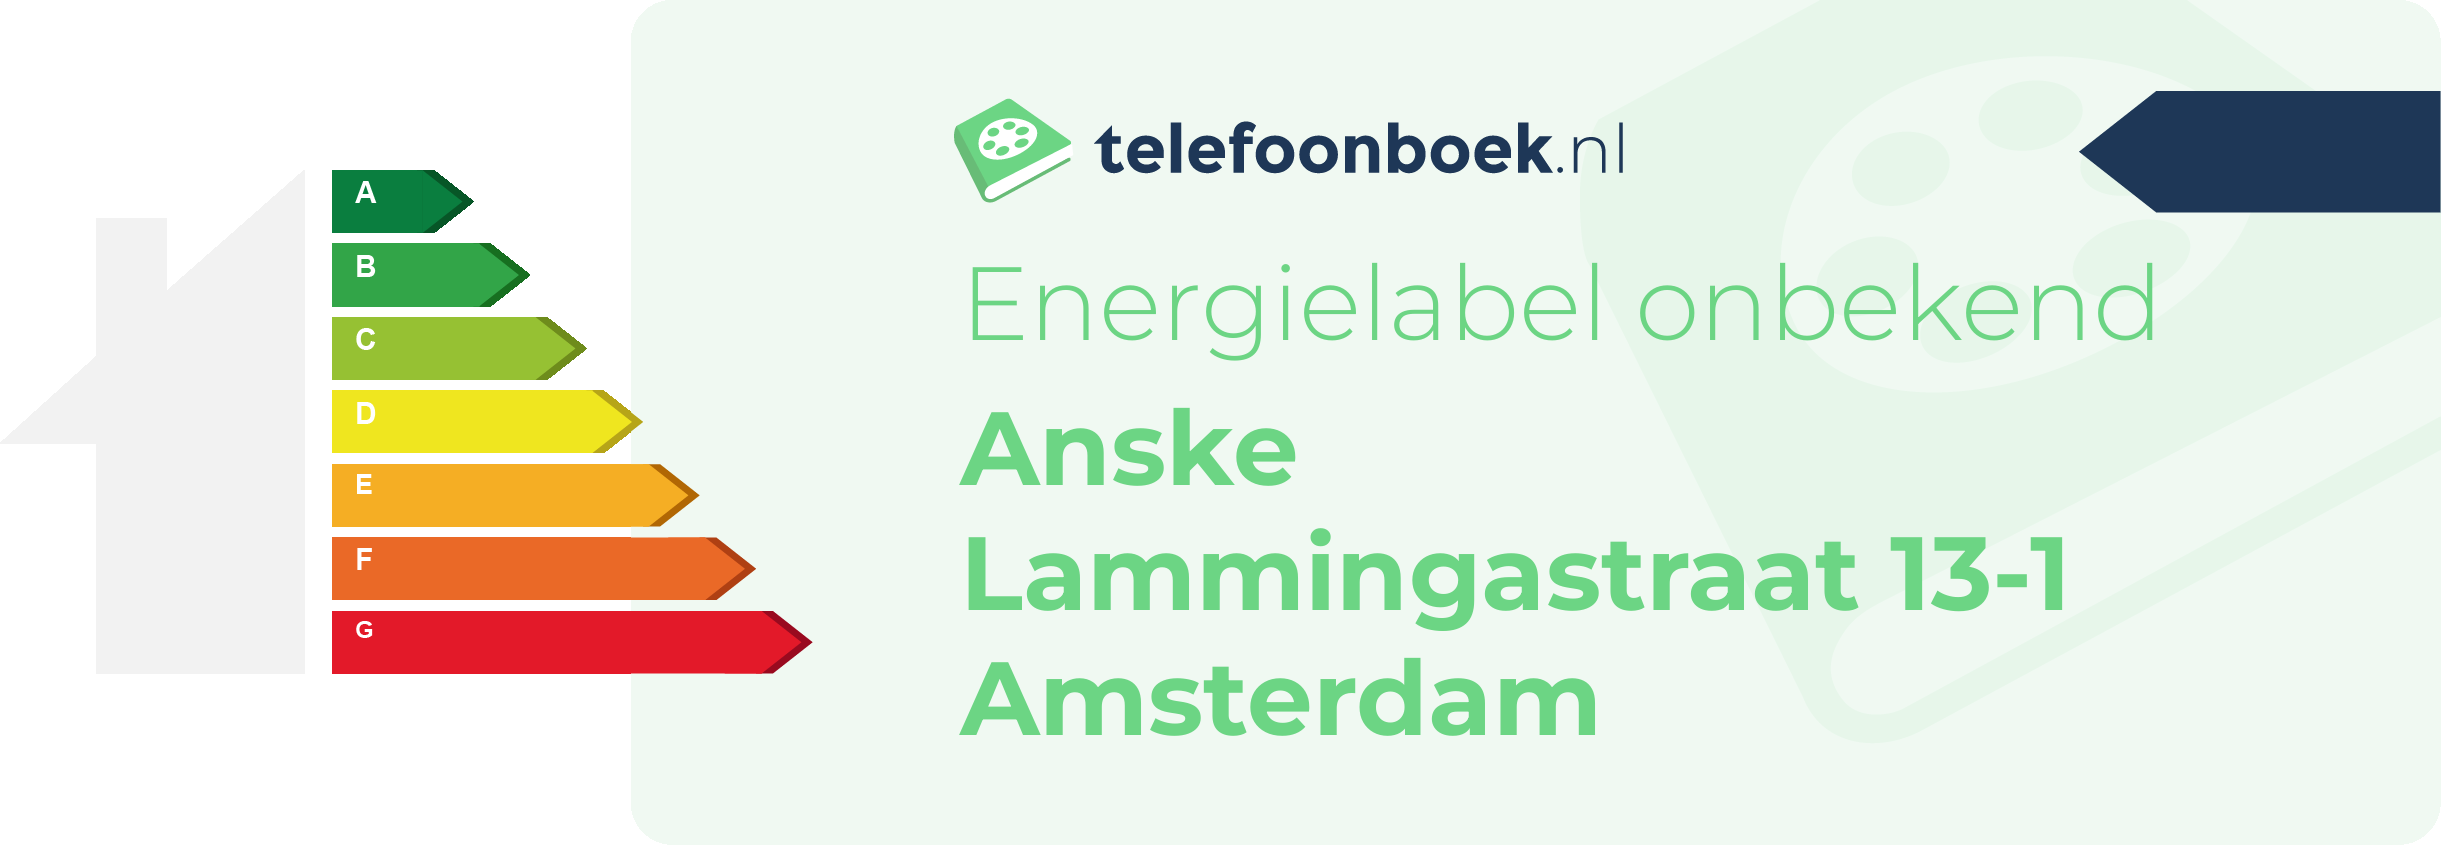 Energielabel Anske Lammingastraat 13-1 Amsterdam